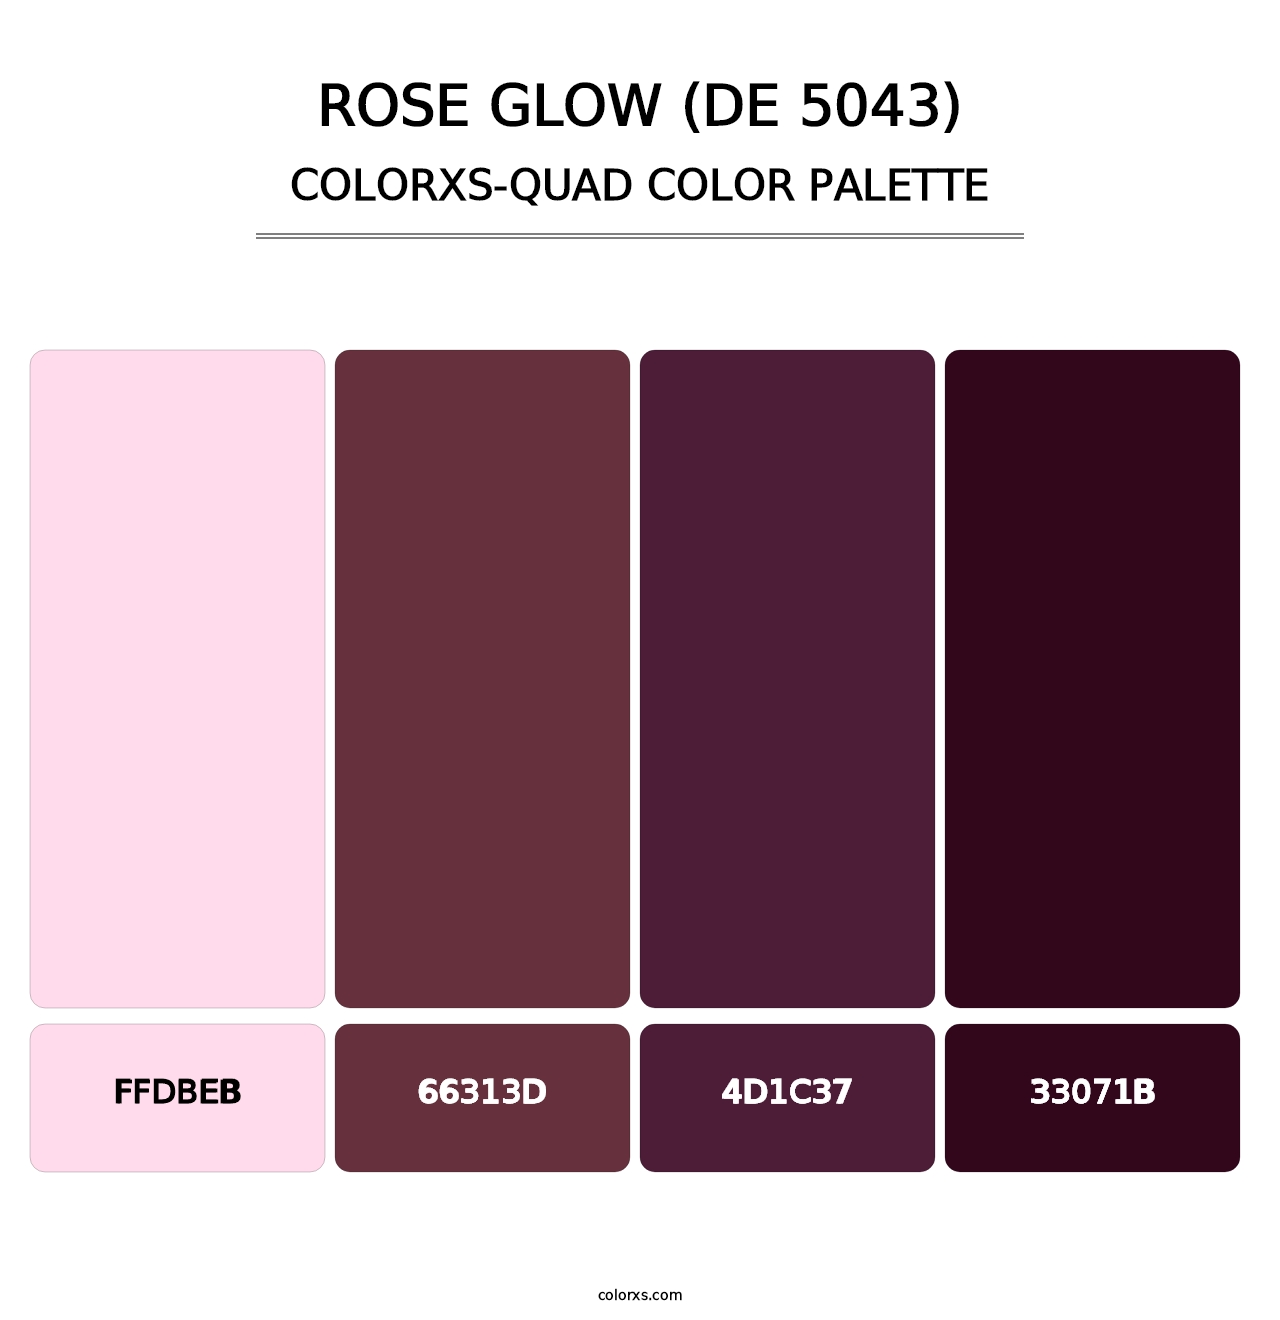 Rose Glow (DE 5043) - Colorxs Quad Palette